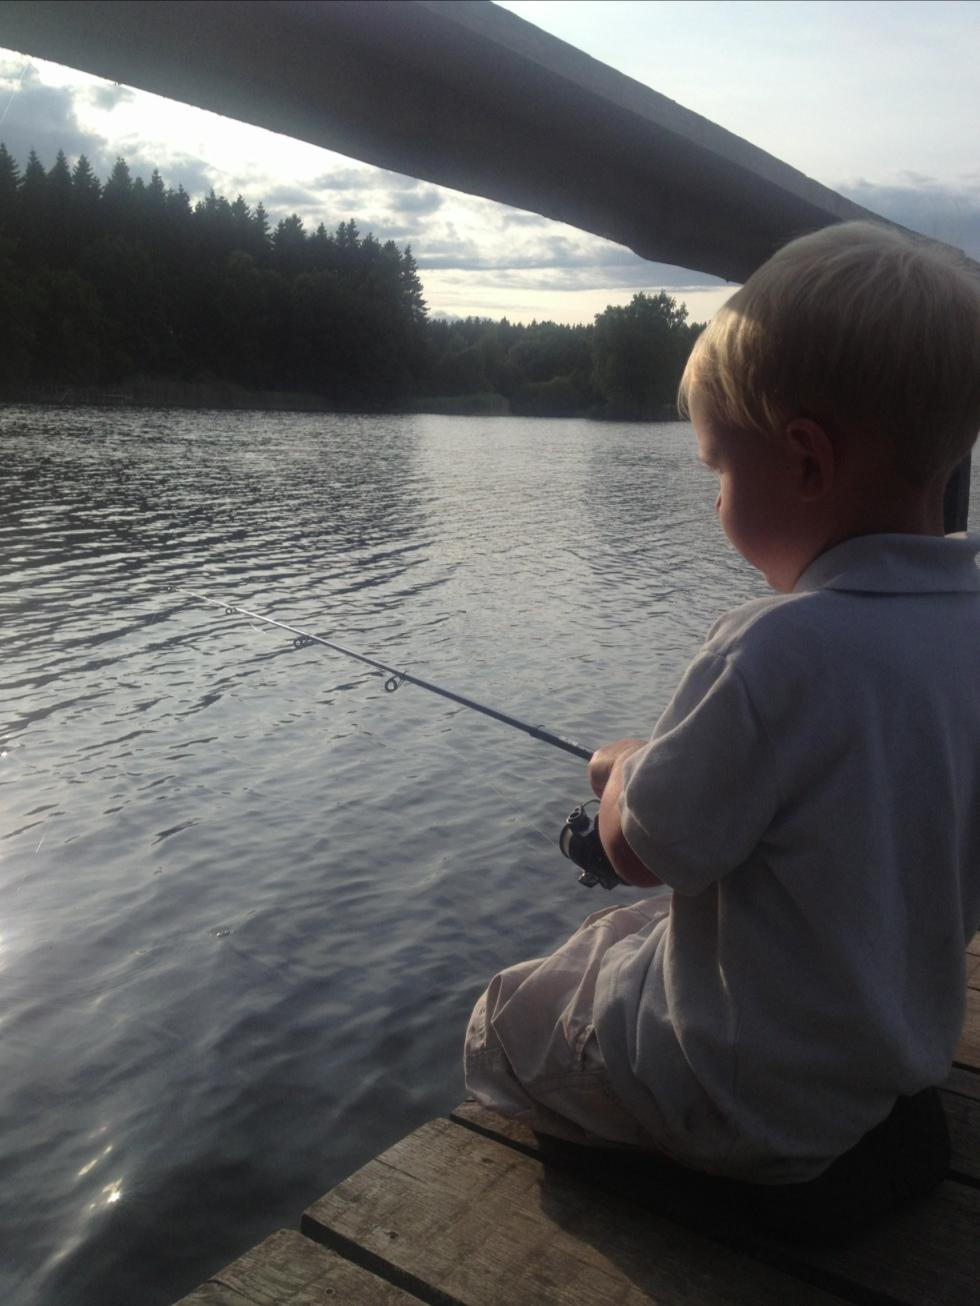 min lille son William försöker fånga storgäddan i verkasjön i Skåne